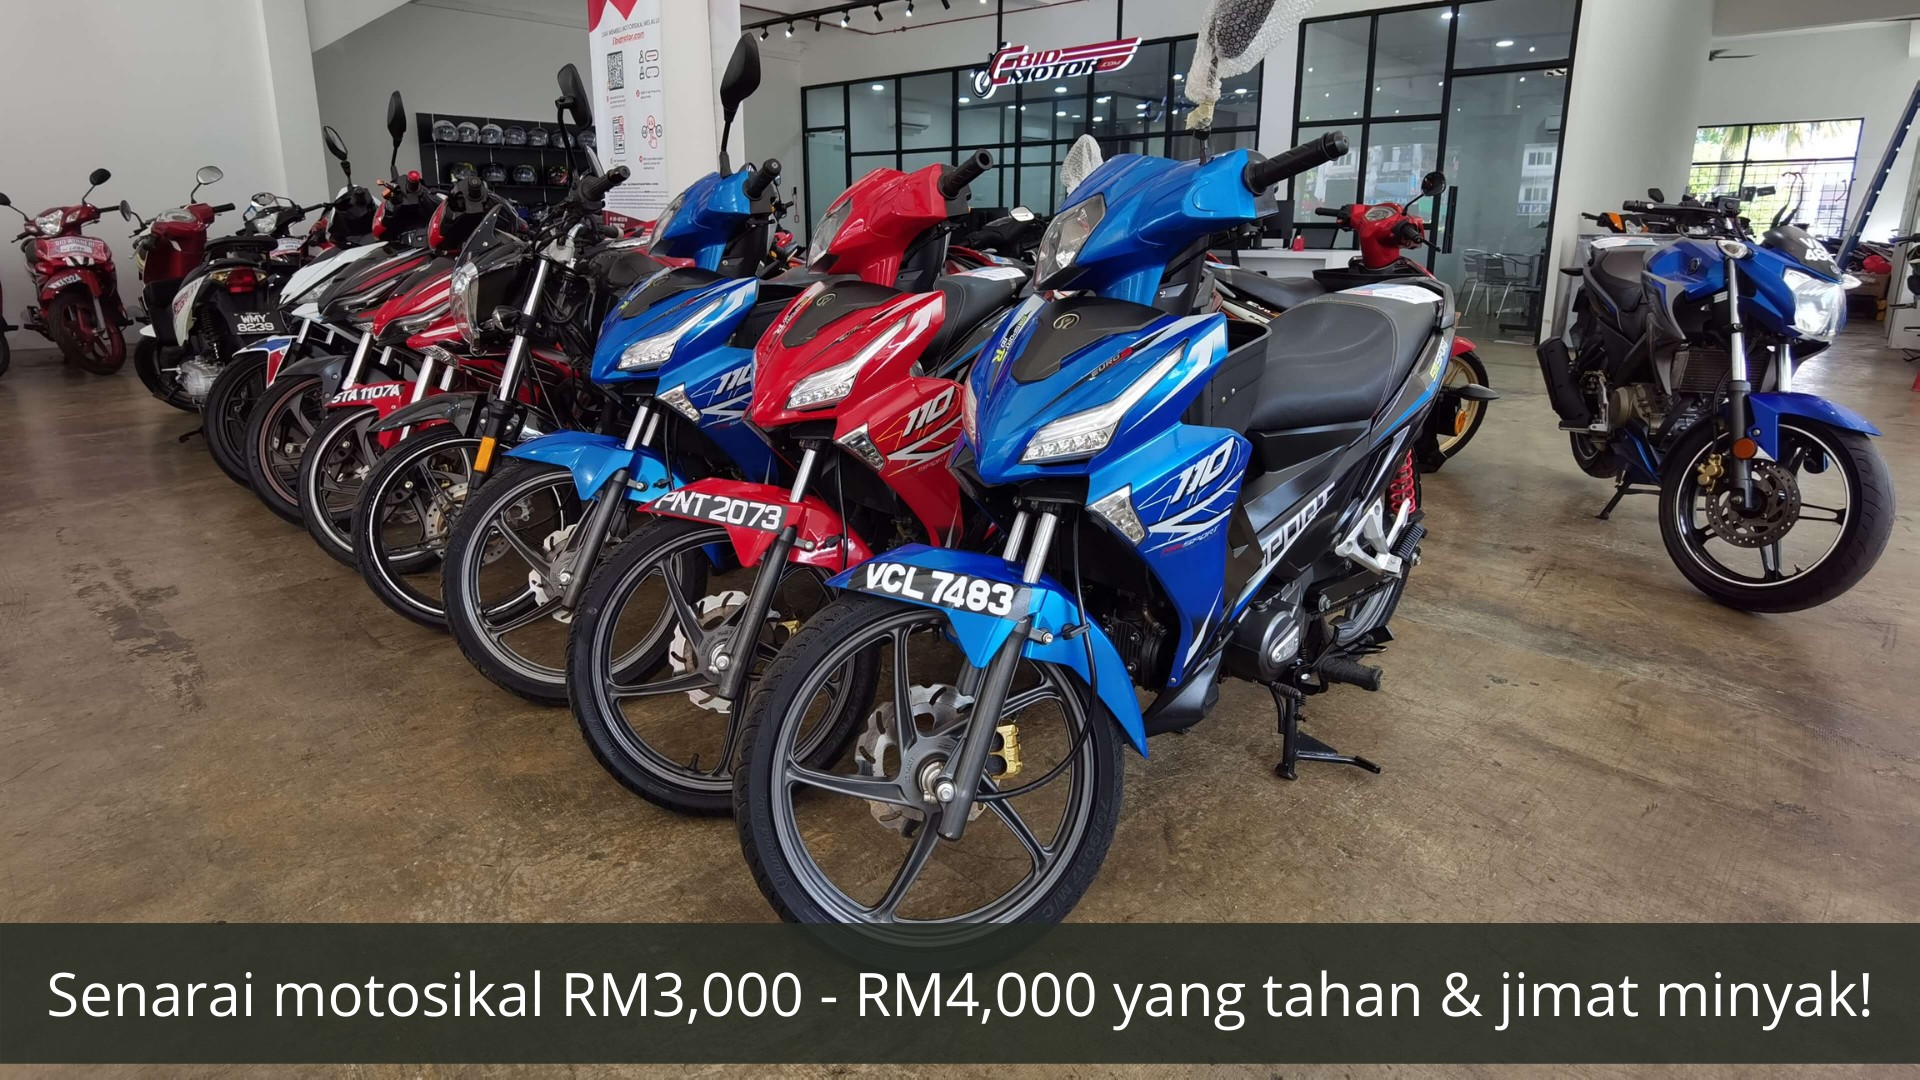 Mencari motosikal yang tahan & jimat petrol? Harga baru RM3,000 - RM4,000 sahaja! 